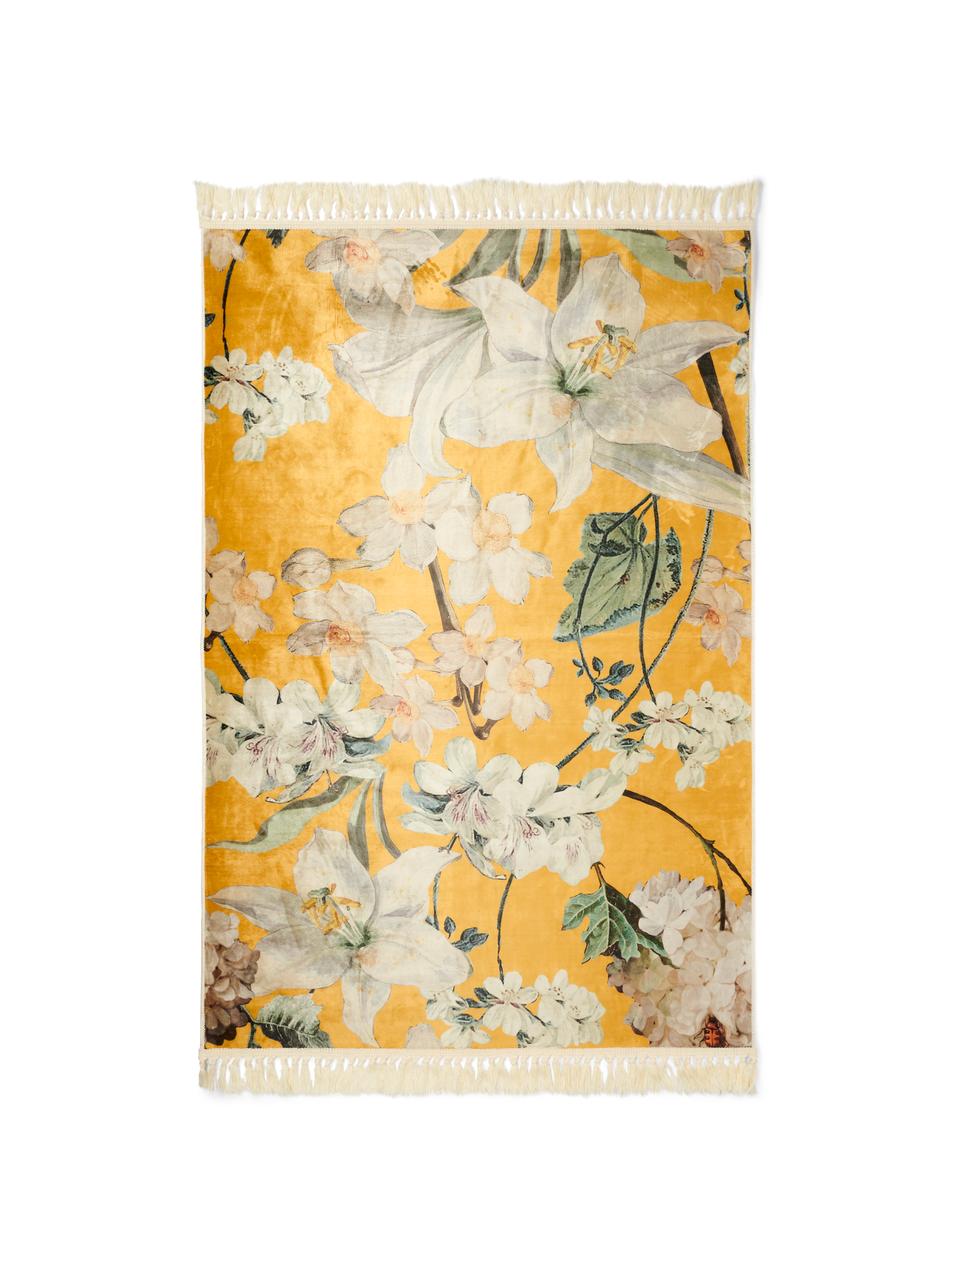 Teppich Rosalee mit Blumenmuster, 60% Polyester, 30% thermoplastisches Polyurethan, 10% Baumwolle, Senfgelb, Mehrfarbig, B 180 x L 240 cm (Grösse M)